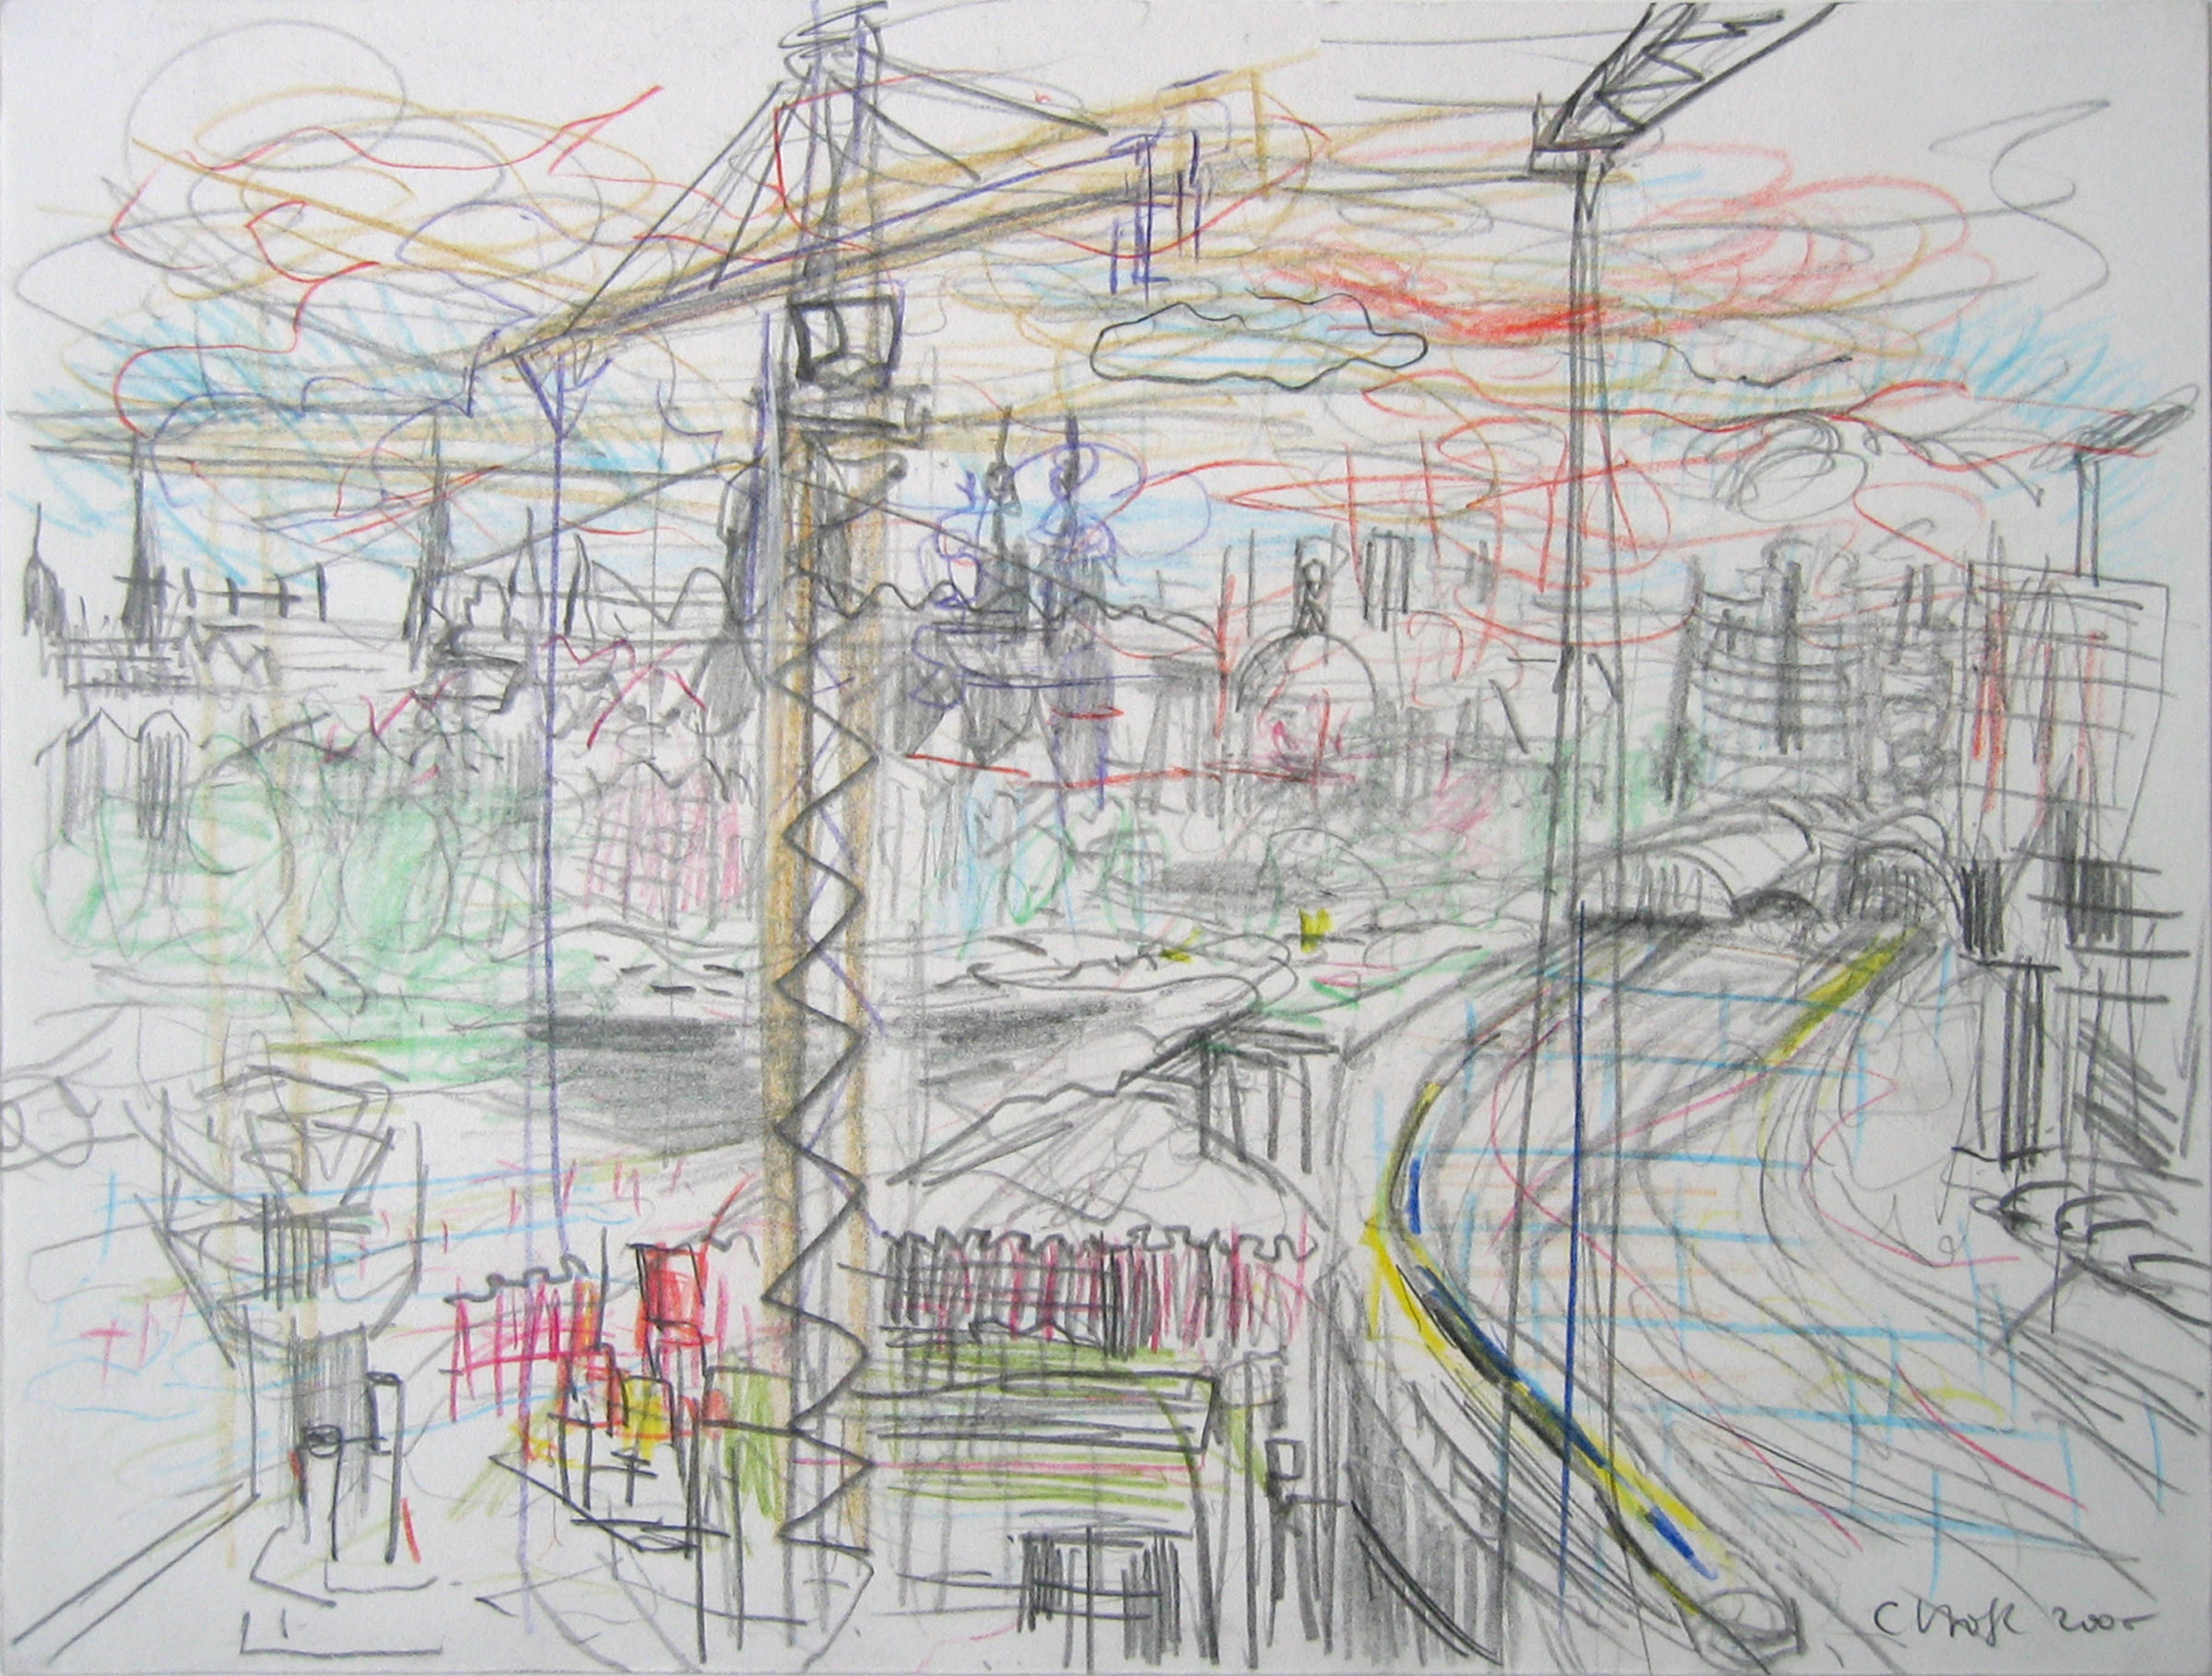 tekening van de bouwwerkzaamheden op het Oosterdokseiland, nabij Centraal Station Amsterdam - Cornelia Vrolijk